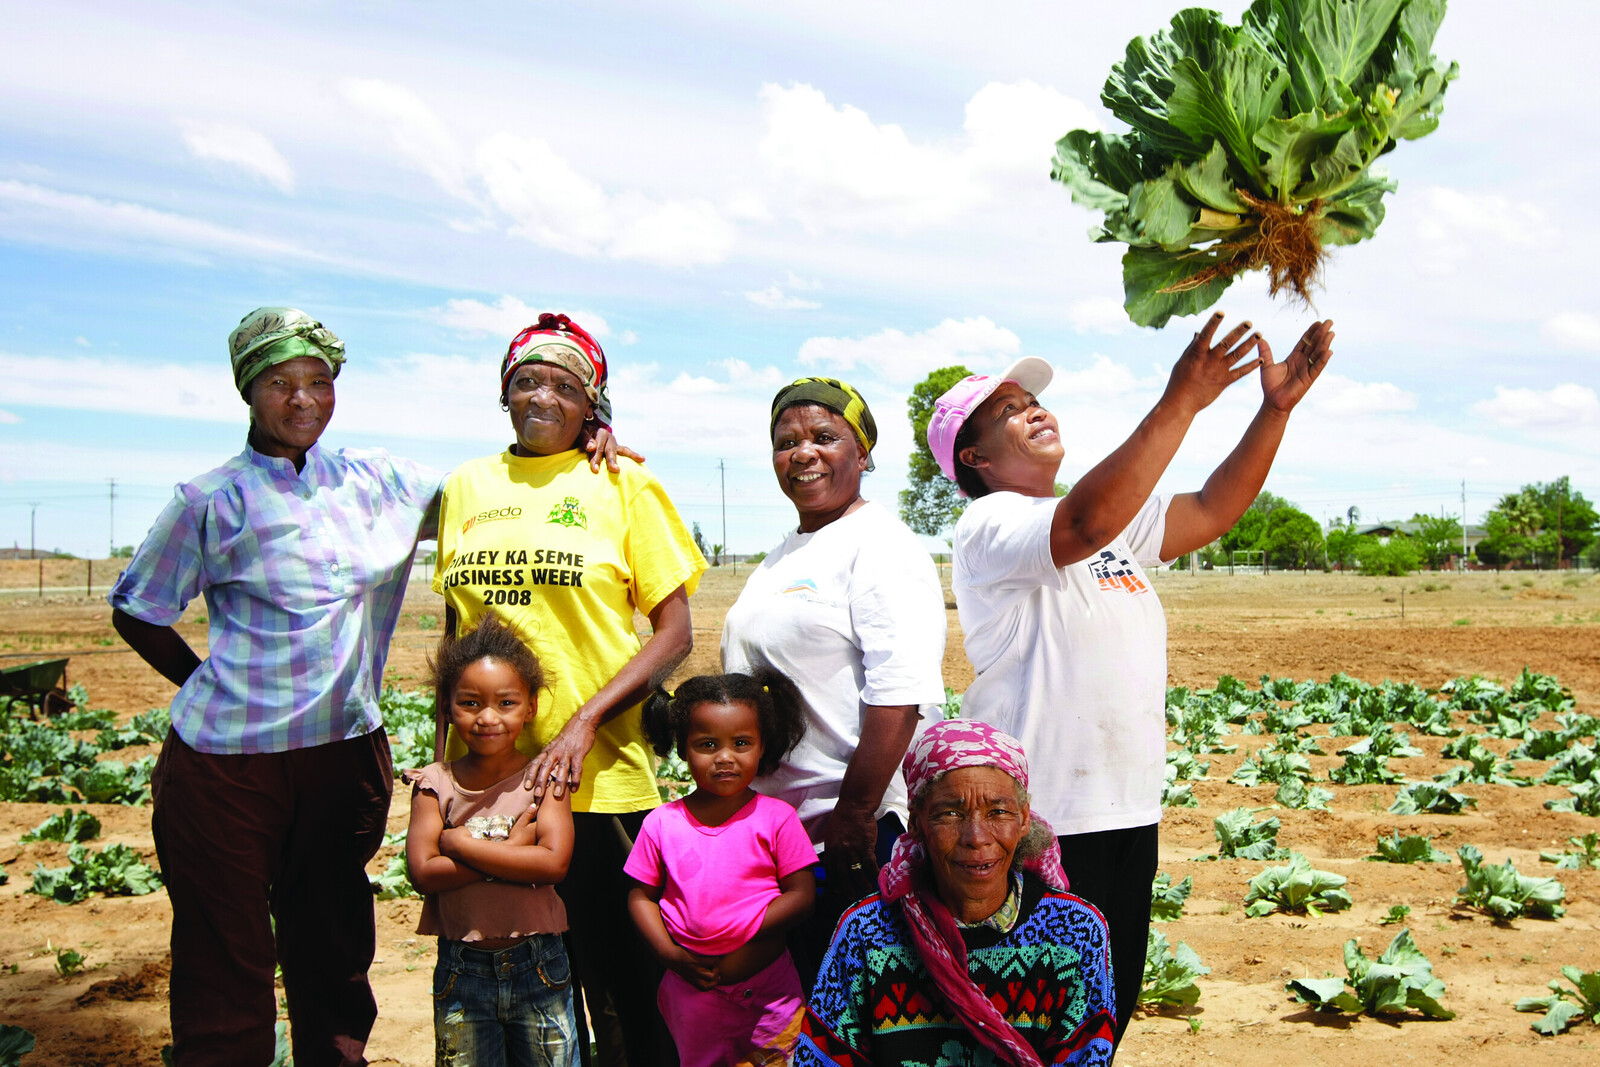 Eine Familie erntet Gemüse in Afrika. In von Dürre und Trockenheit beherrschten Gebiten hilft dürreresistentes Saatgut, um die Ernte zu sichern.